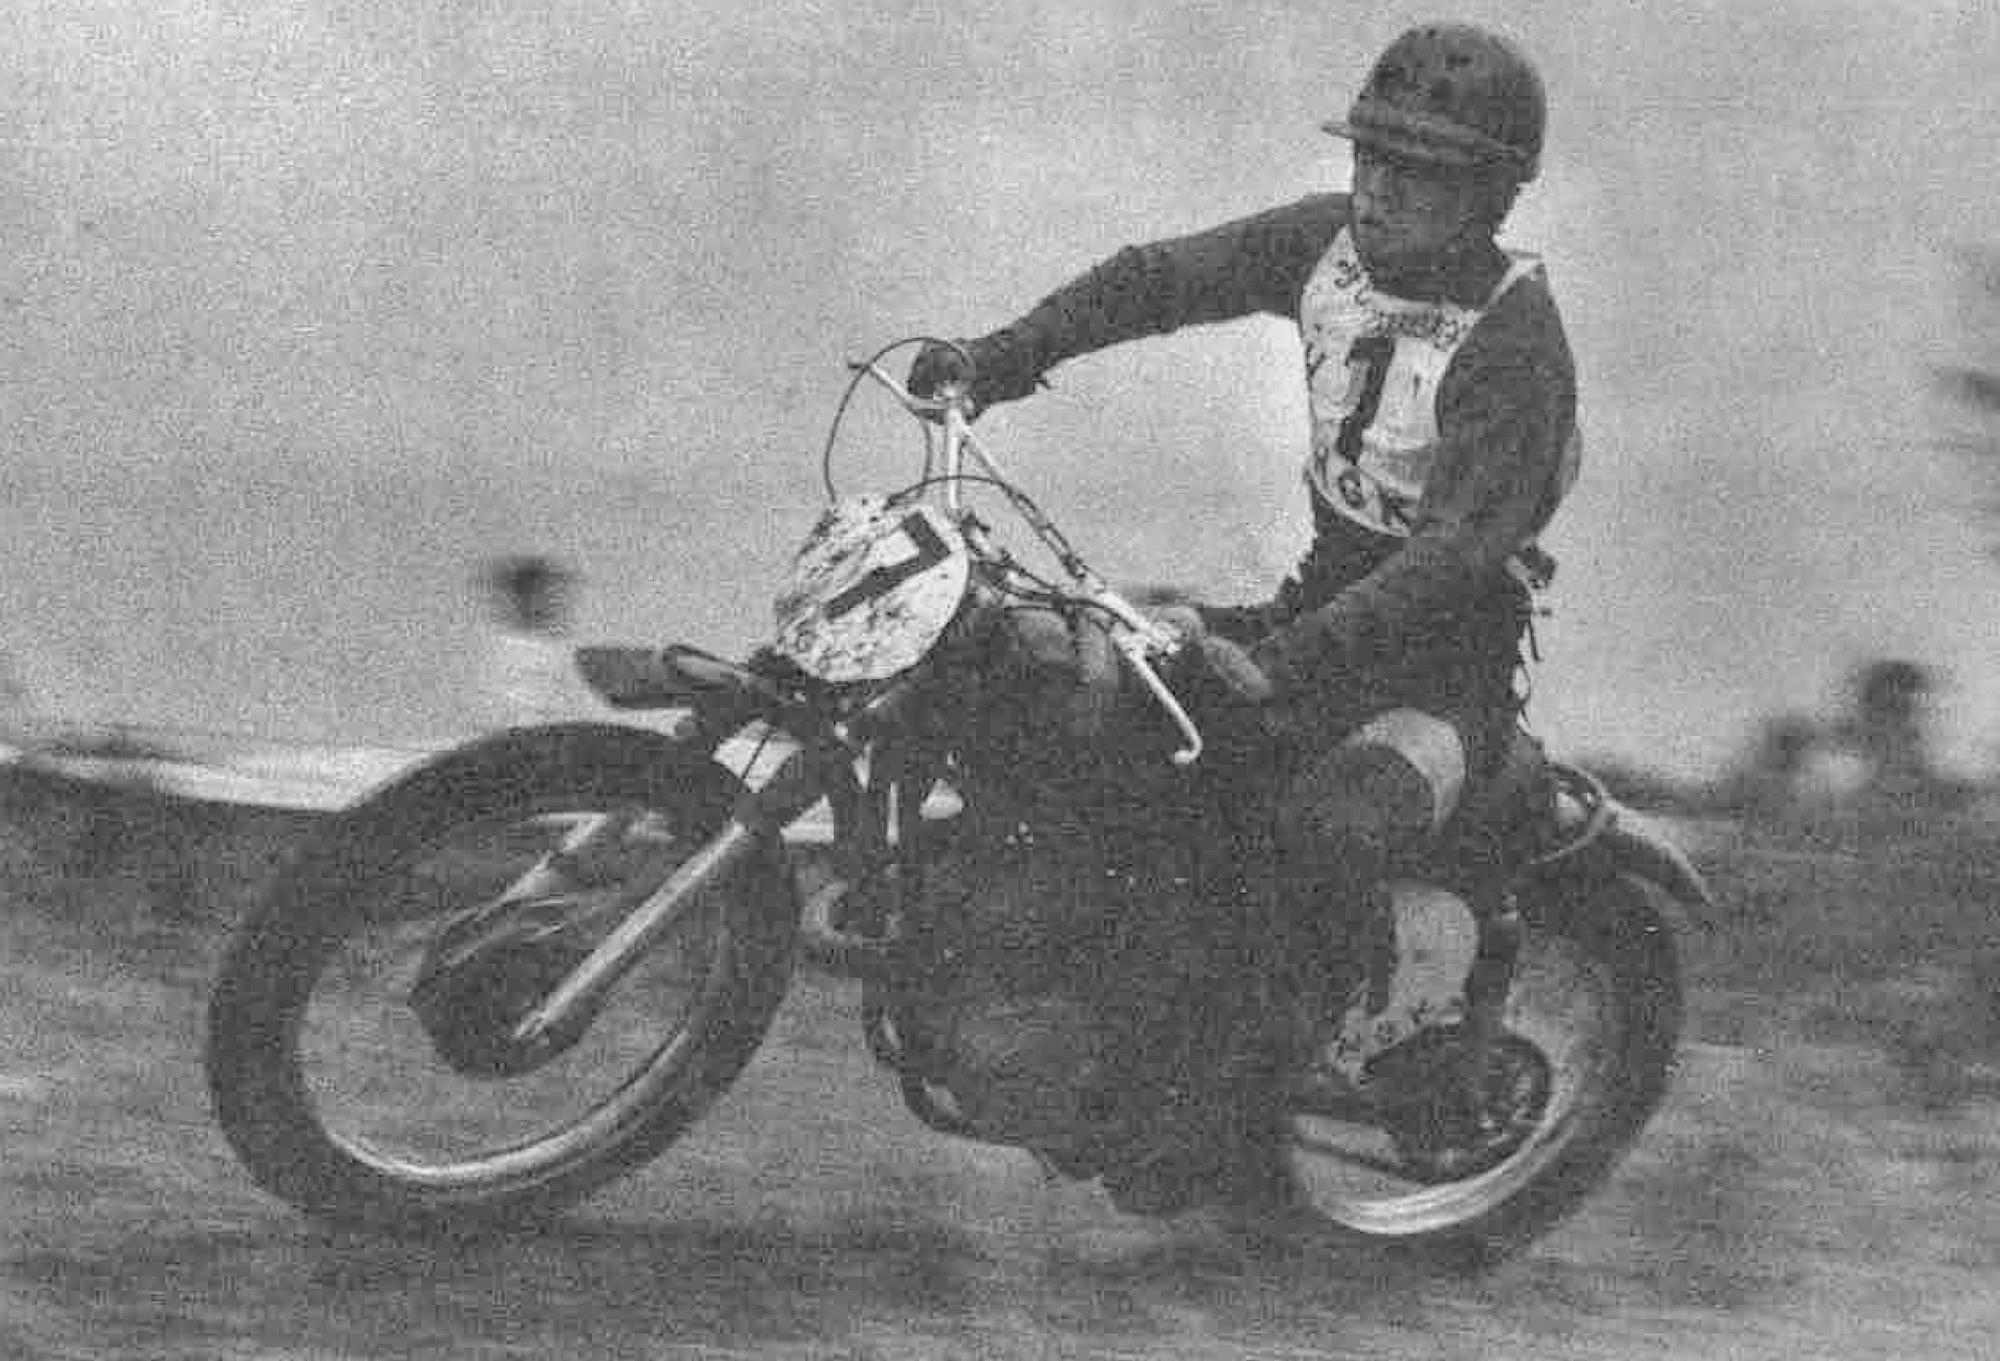 写真は1967年5月14日モトクロス日本一を決定する全日本選手権モトクロス日本グランプリでヤマハ初の単気筒2サイクル250モトクロッサーで参戦し優勝した時の鈴木忠男さん。